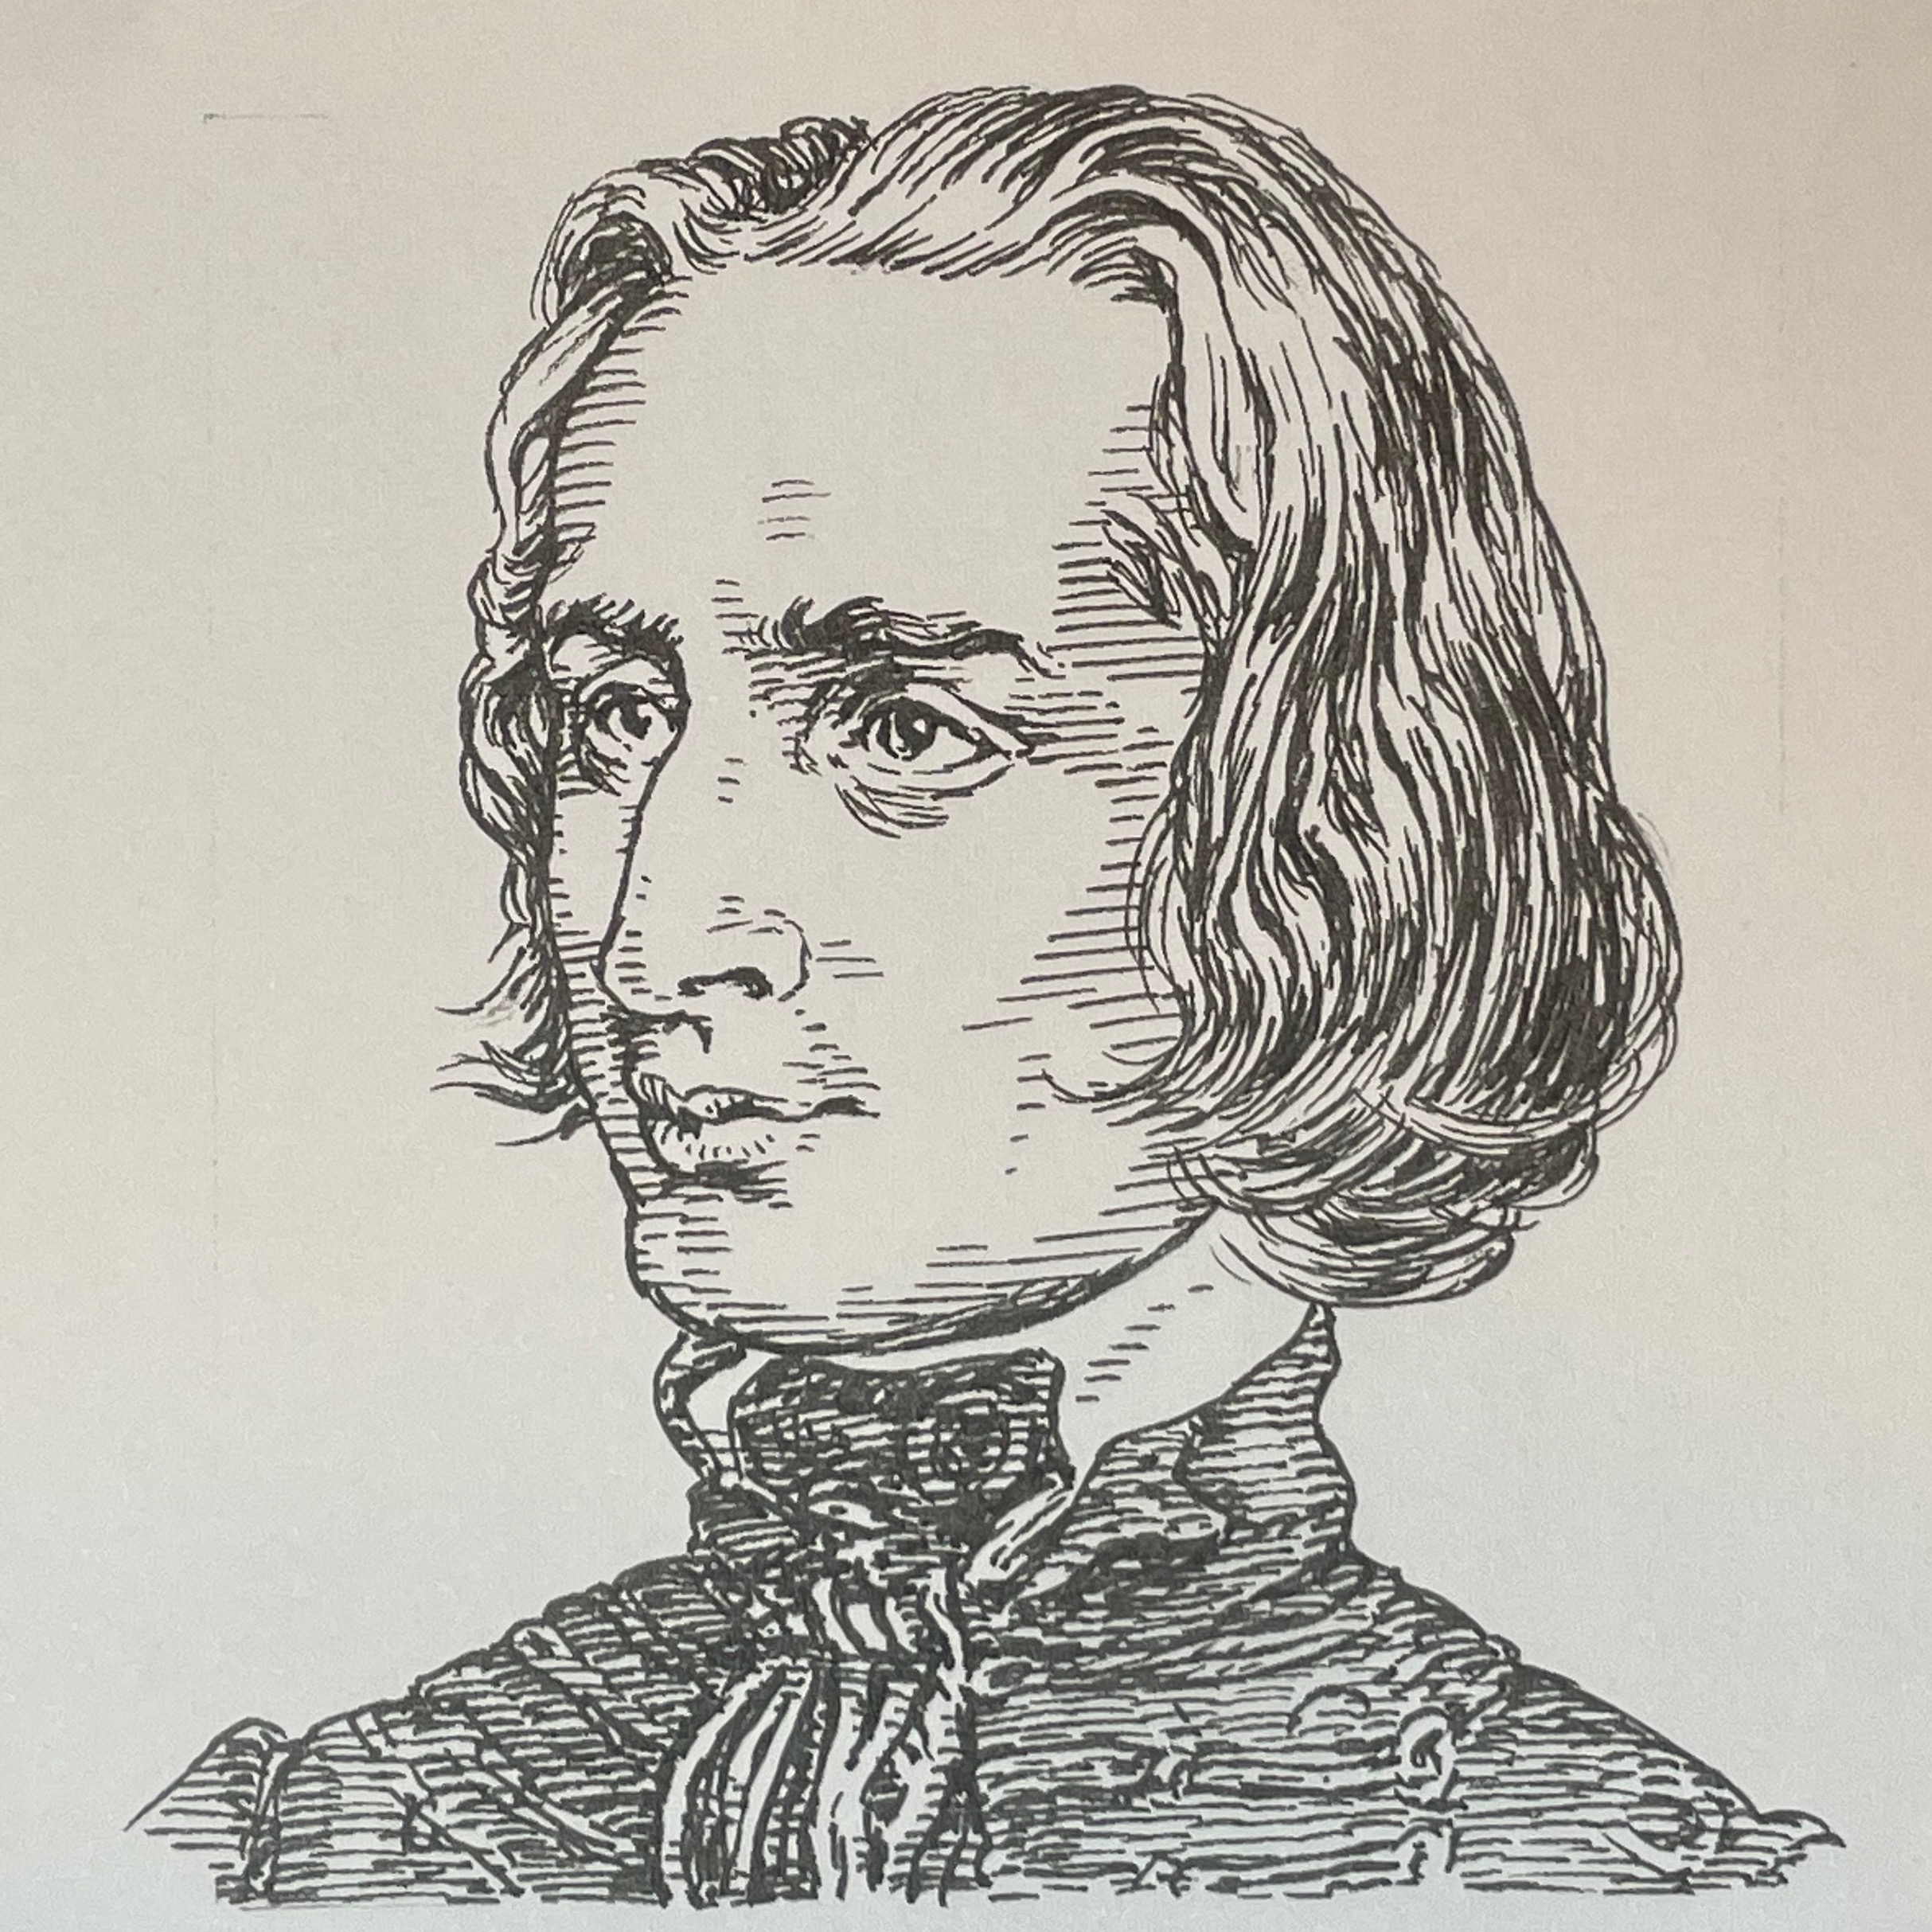 1811-1886を生きた作曲家。幼少期からピアニストとして活躍し、拠点を移したウィーンでは、チェルニーやサリエリから音楽を学ぶ。ピアノ界におけるスターの階段を歩み、19世紀における標題音楽形式を確立、数々の交響詩を作曲。自身初の交響詩はCe qu'on entend sur la montagne、そしてFaust Symphonyは友人ベルリオーズにゲーテの戯曲ファウストが紹介されてことが起点となり作曲し、その楽譜は友人の手に渡した。